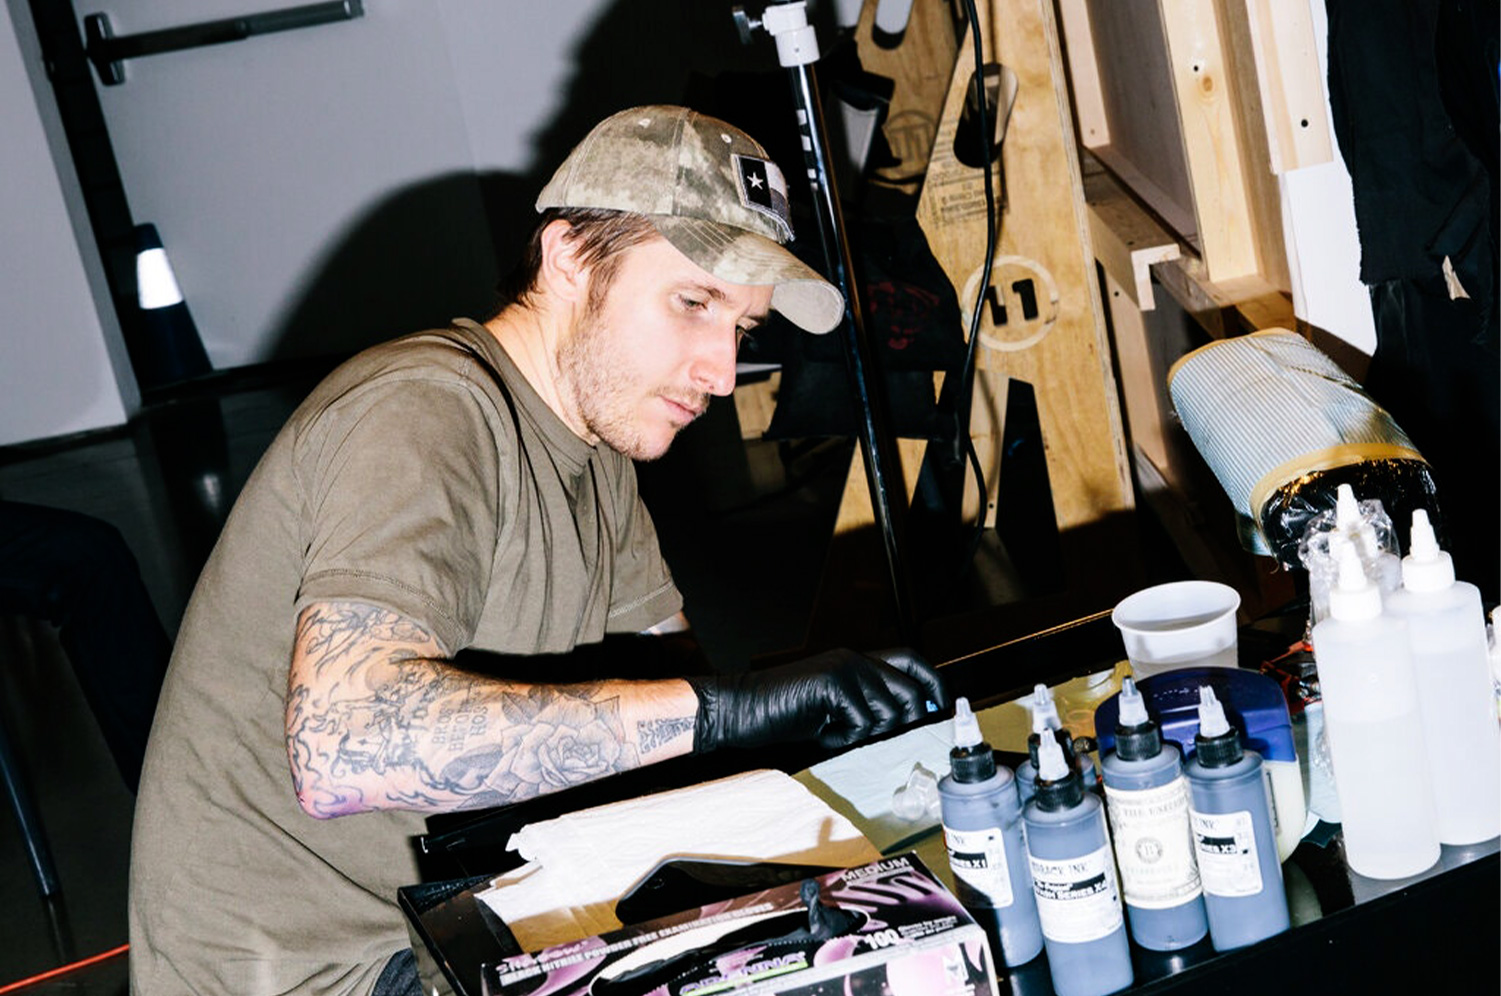 Campbell preparando su tinta en un evento de tatuajes en 2015.